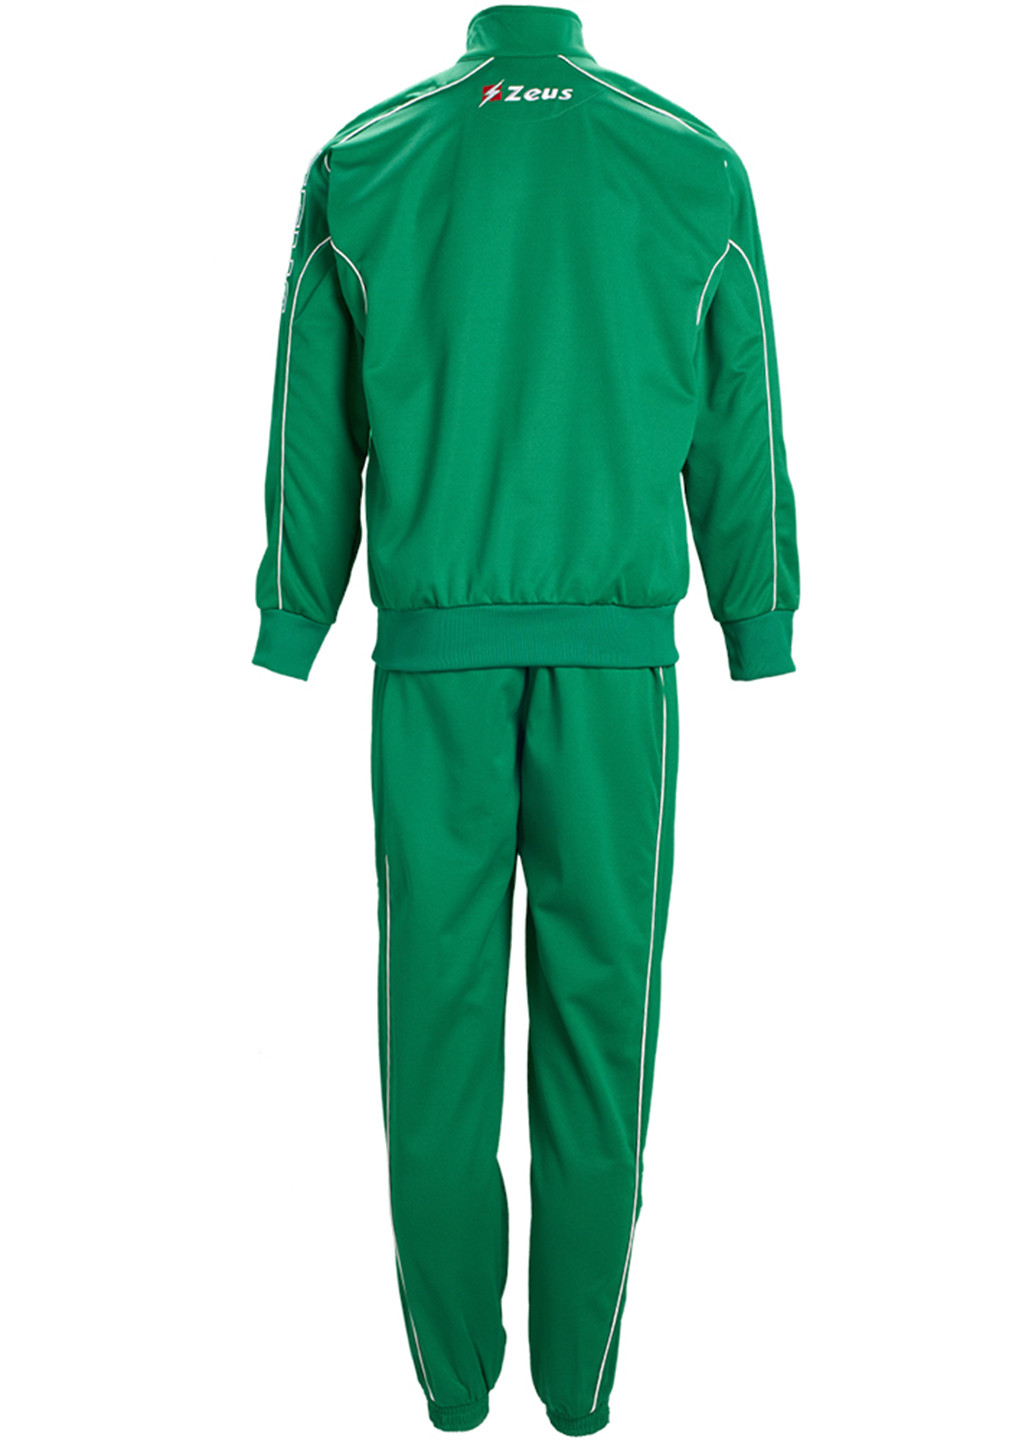 Зеленый демисезонный костюм (кофта, брюки) брючный Zeus